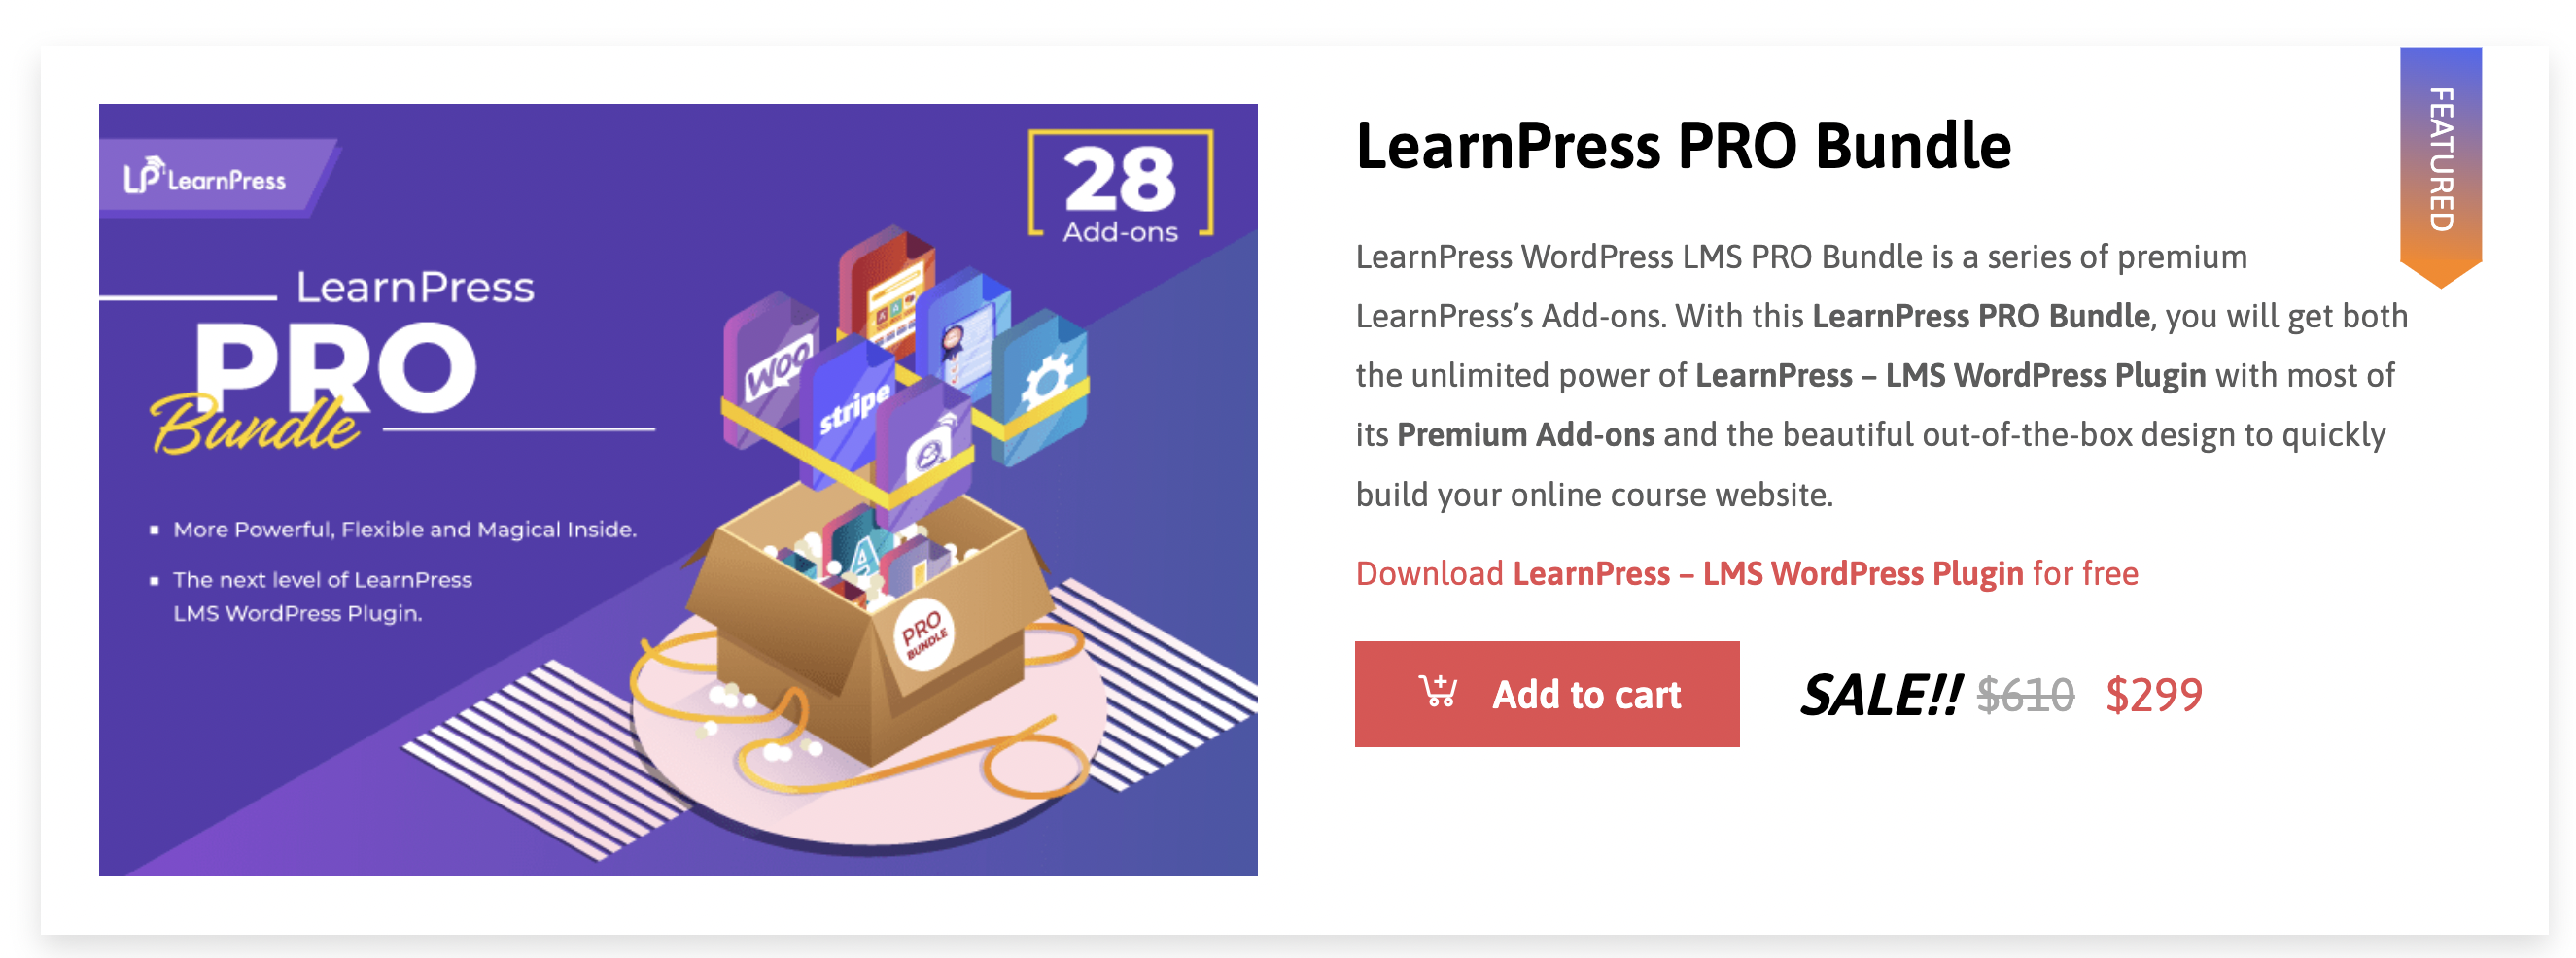 LearnPress prissætning